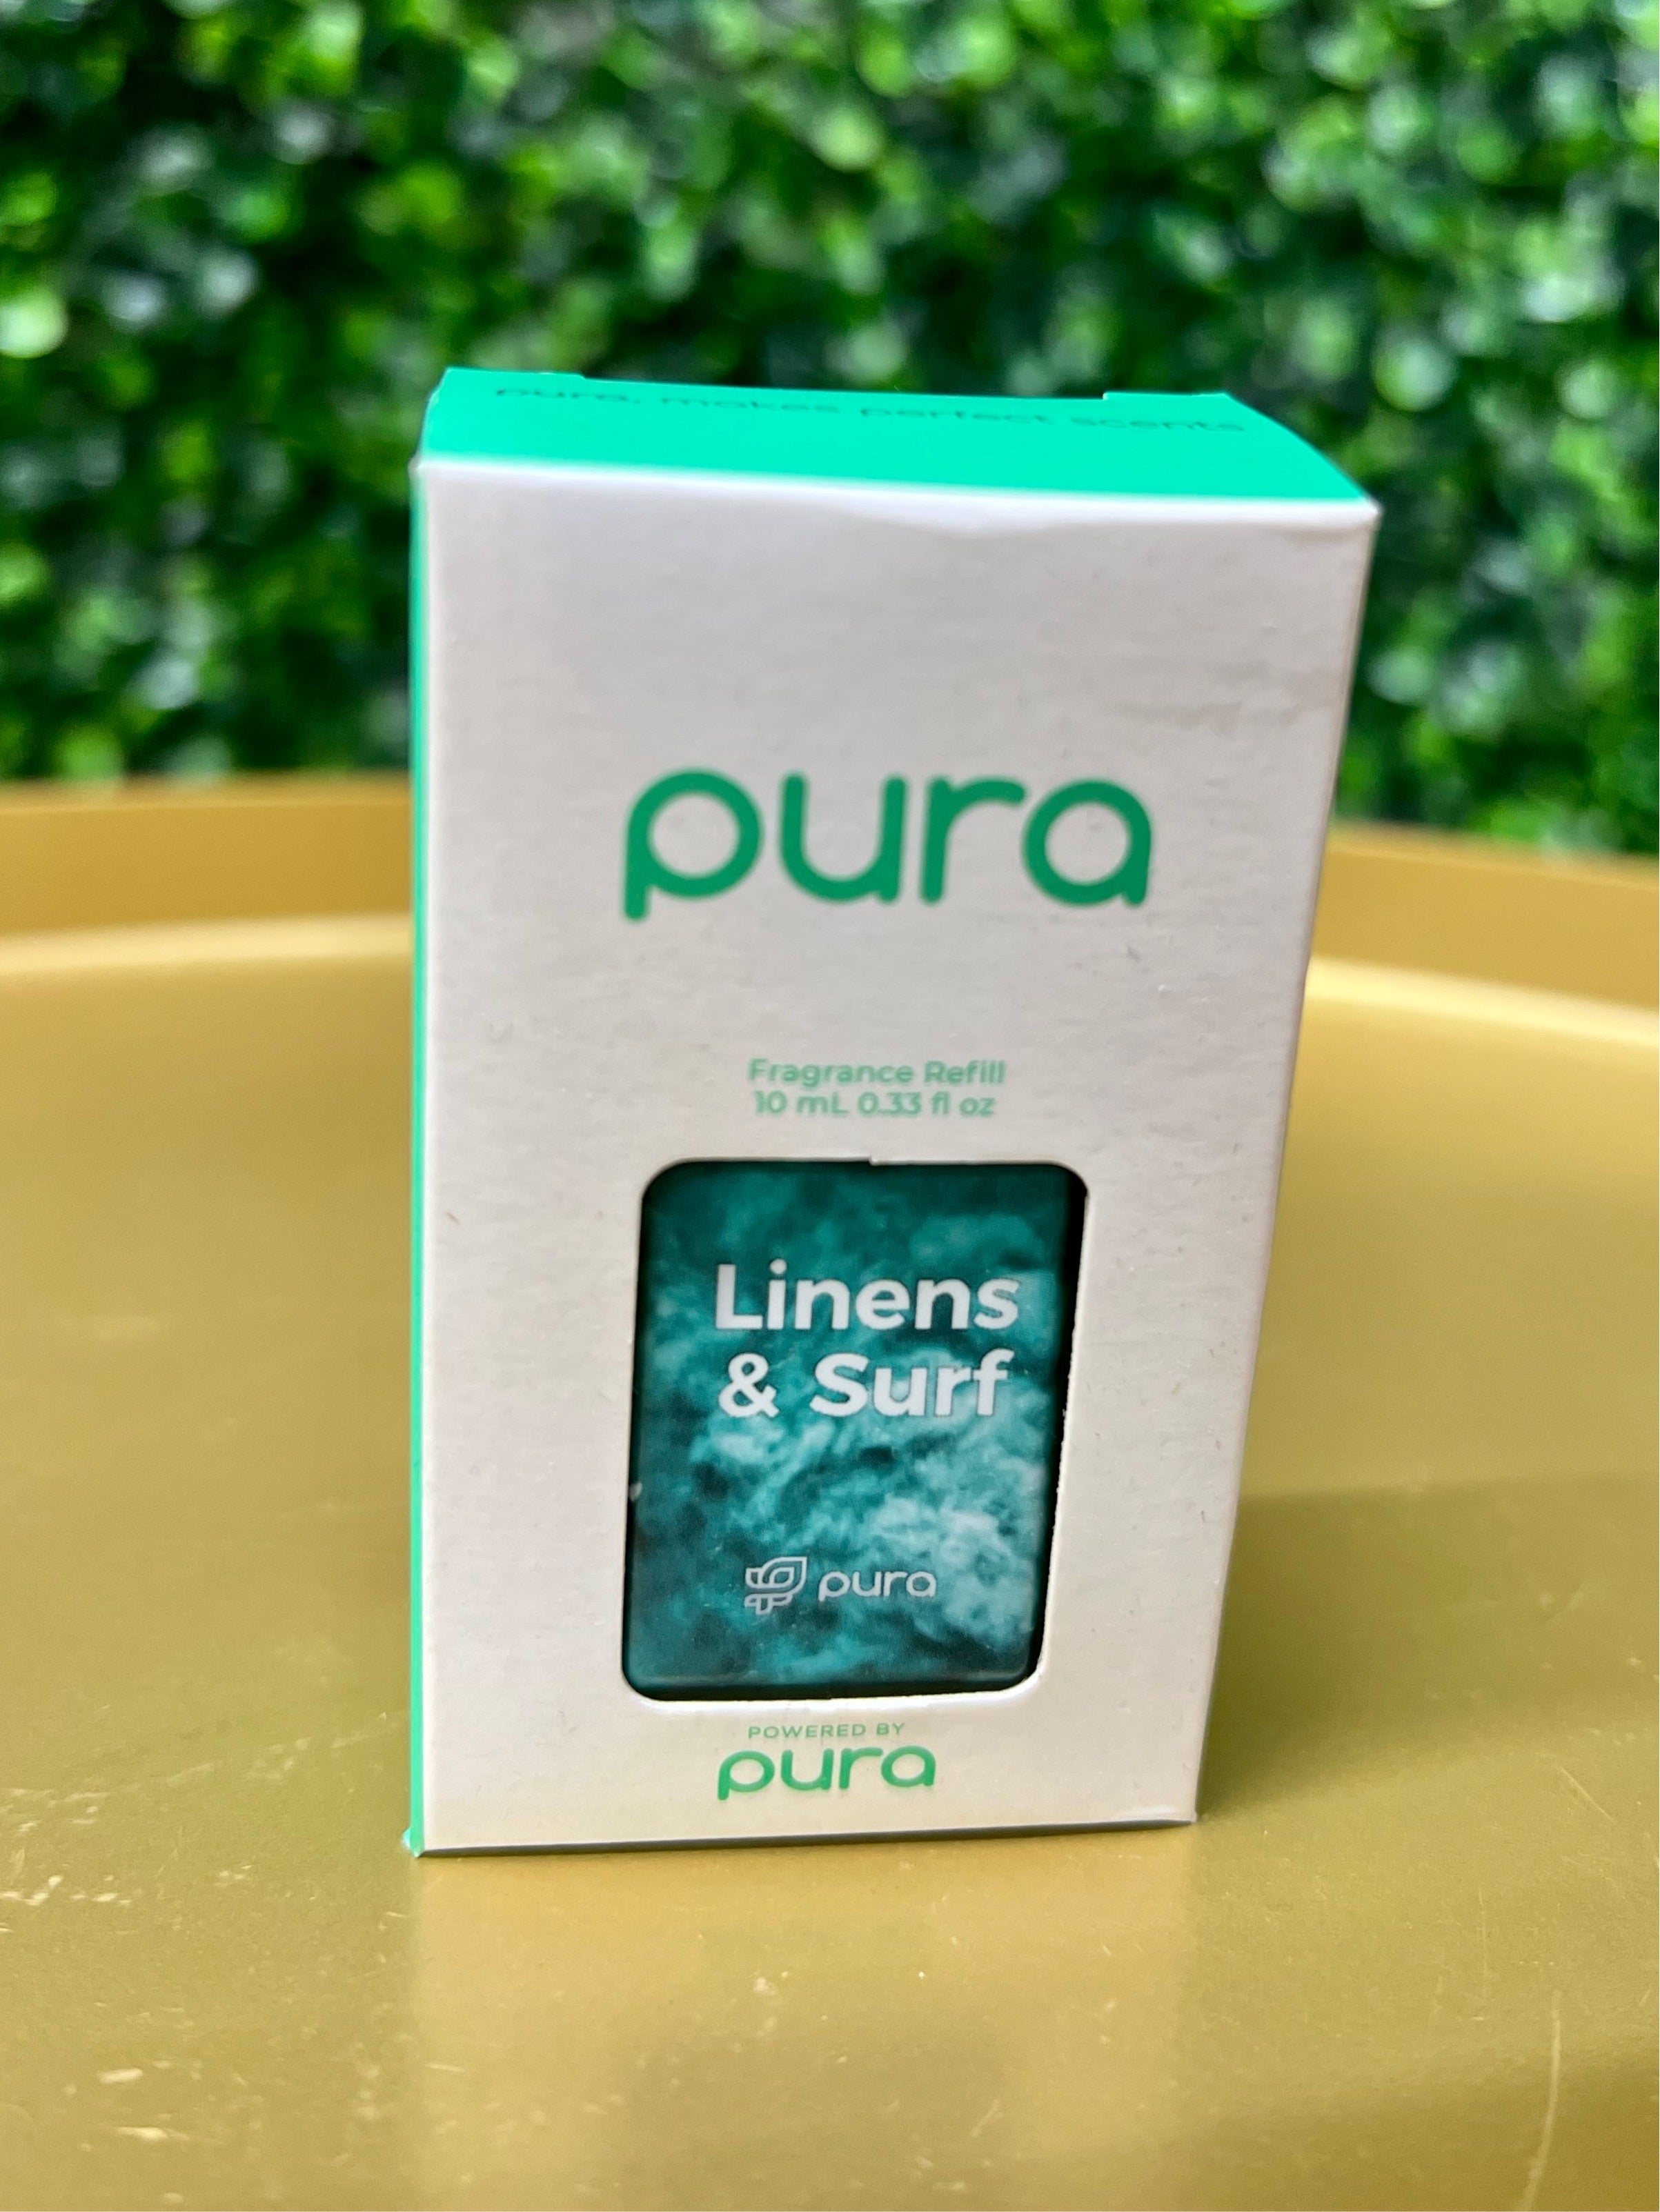 Pura Fragrance Refill~ Linens & Surf